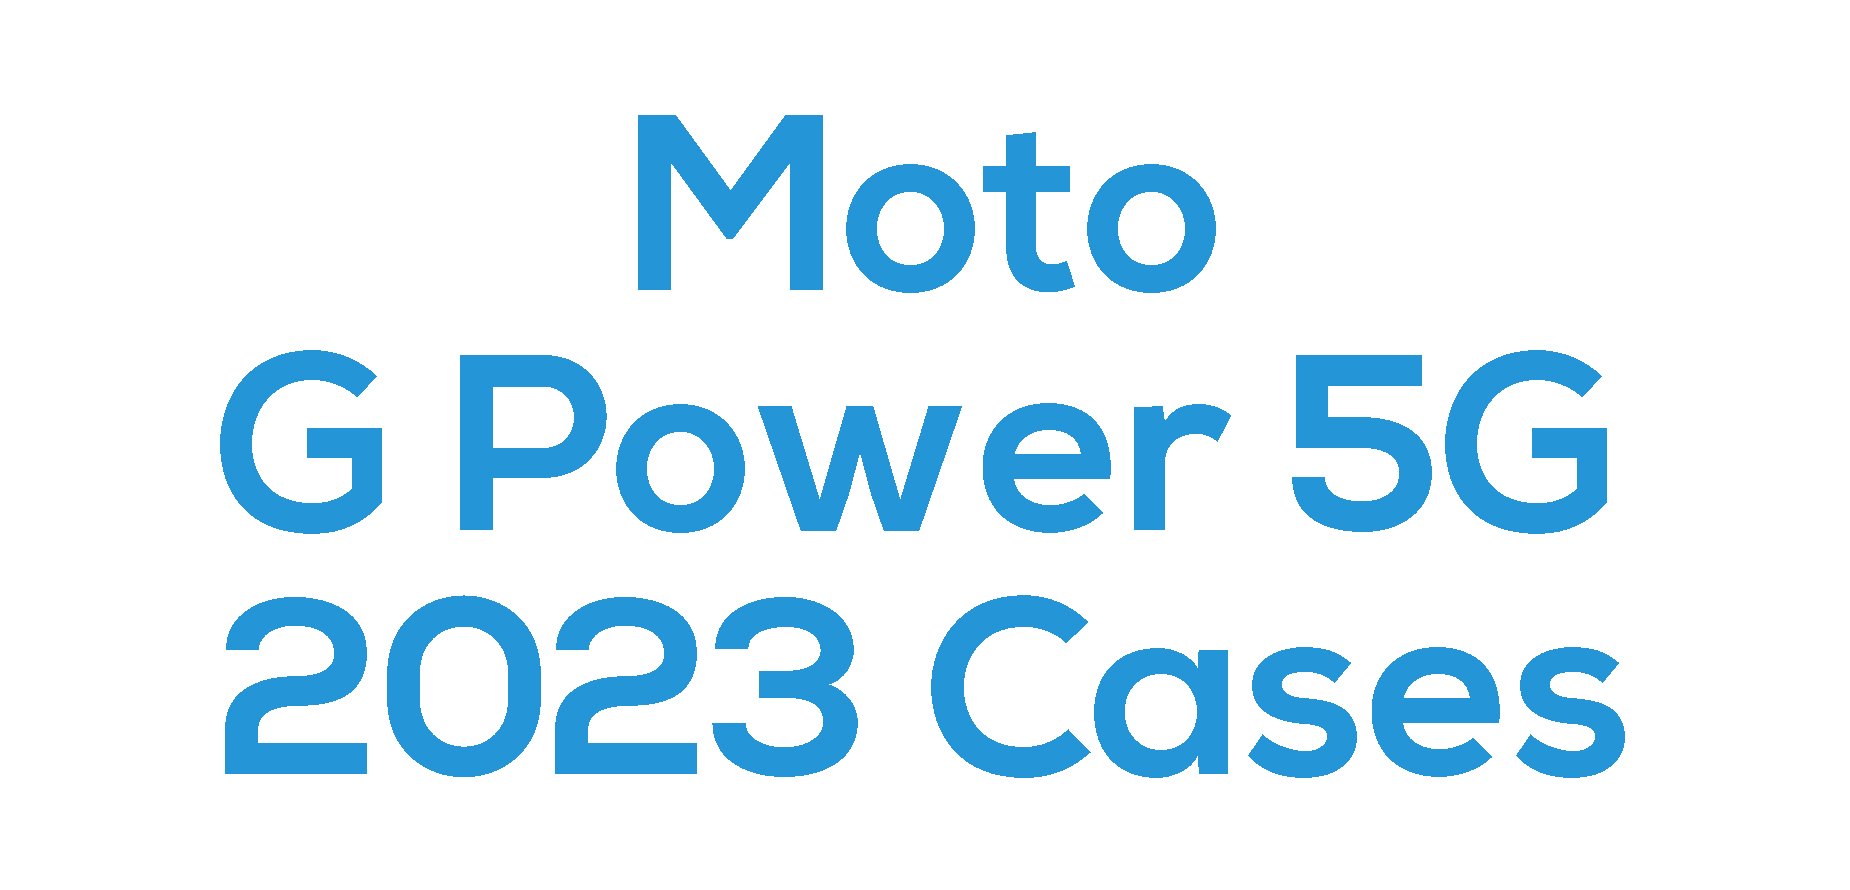 Moto G Power 5G 2023 Cases